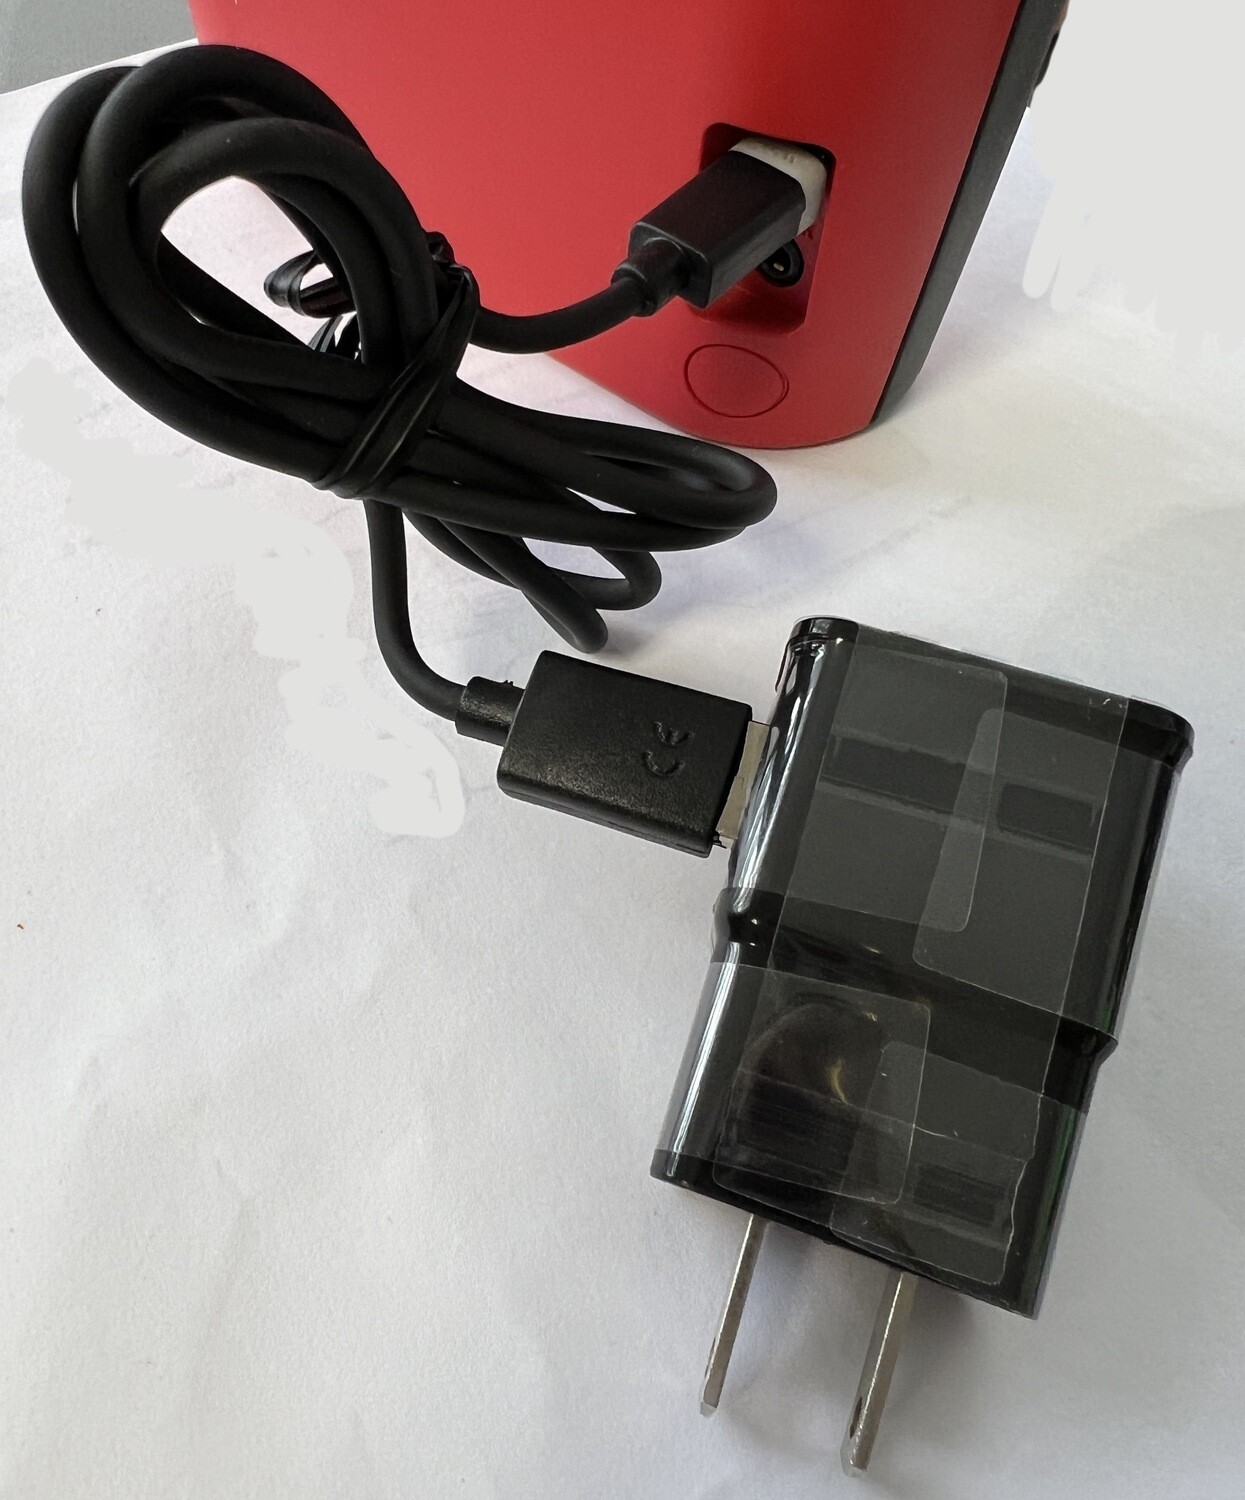 Power supply 5V DC USB Charger for Bose Soundlink Color / Soundlink Mini II